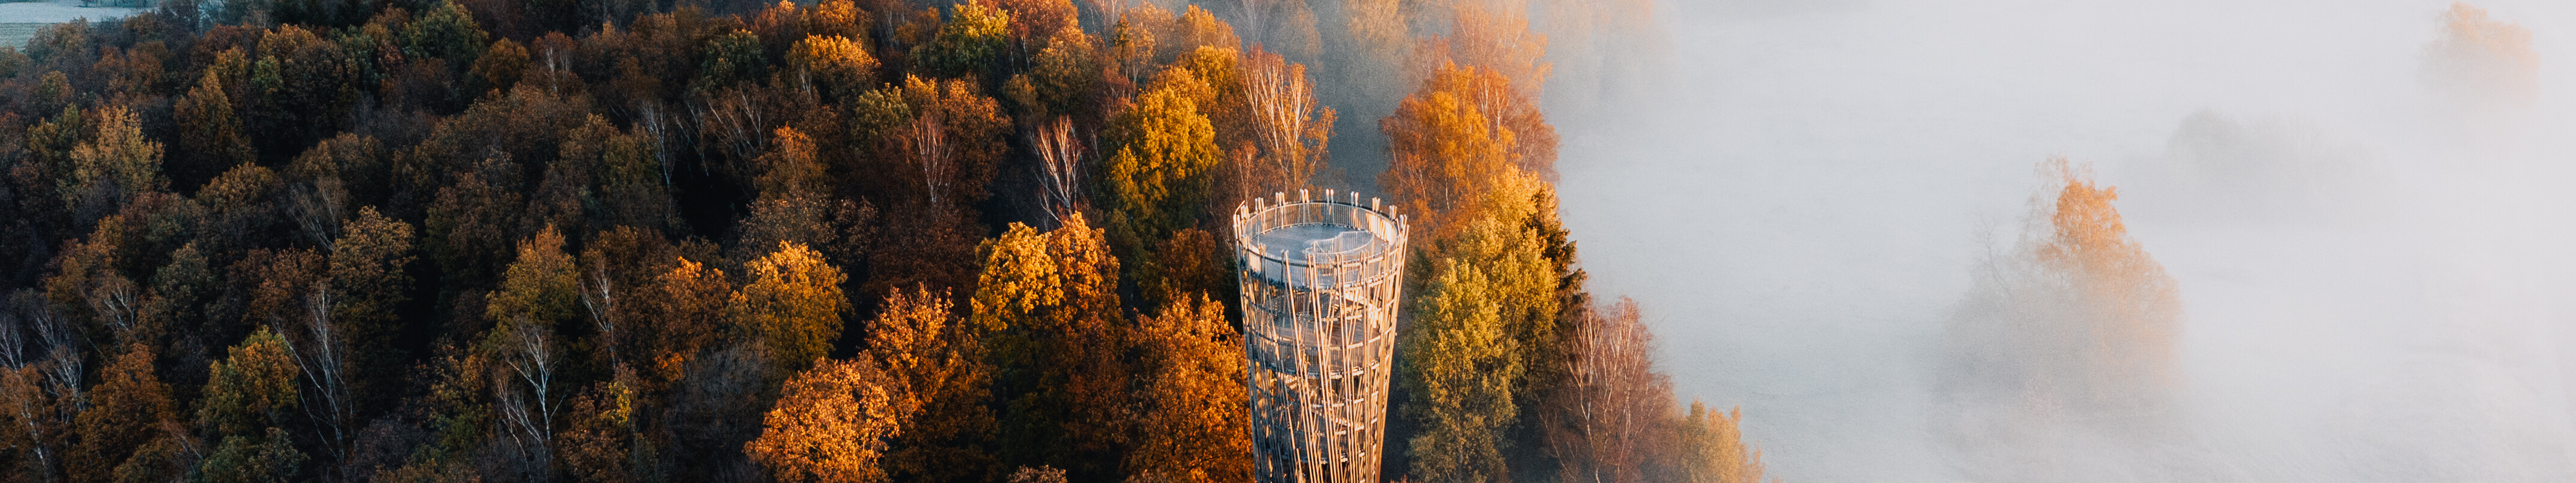 Nebelschwaden im herbstlich gefärbtem Wald am hölzernen Jübergturm im Sauerland  